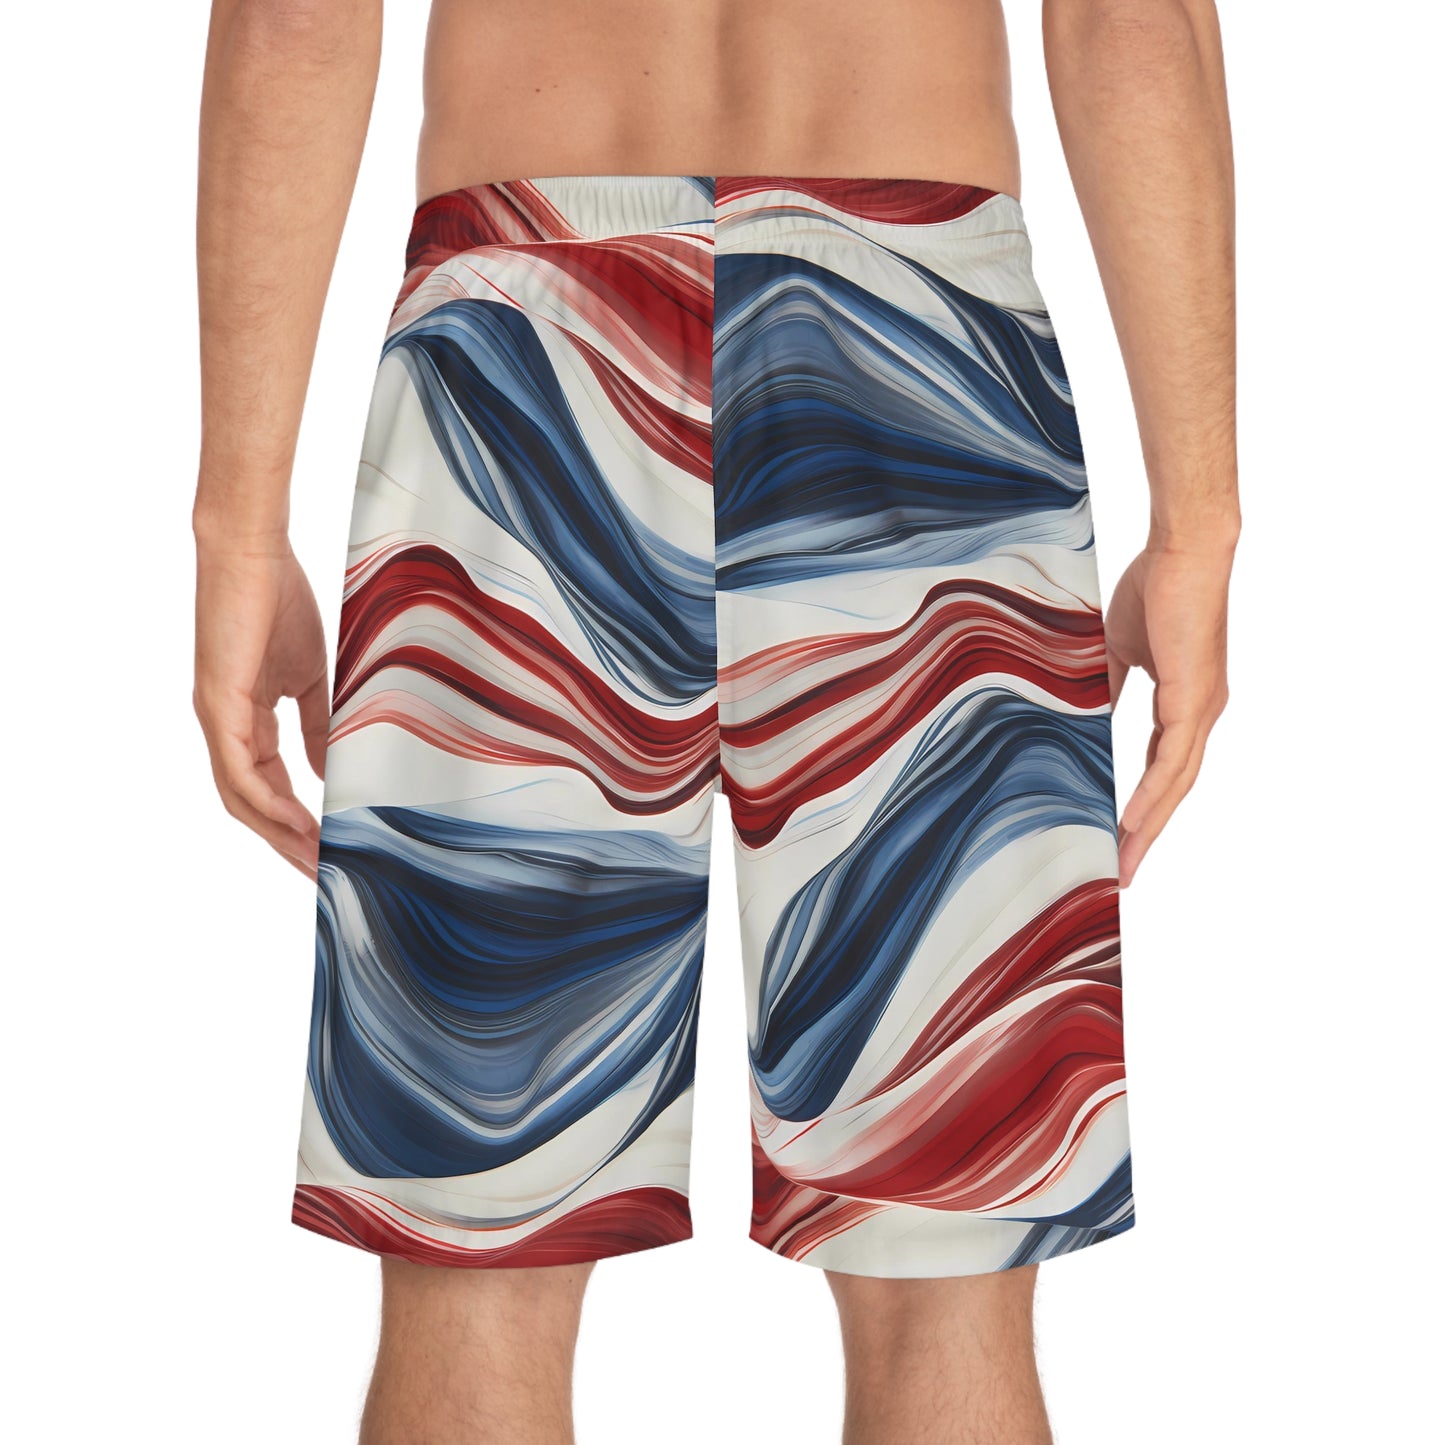 American Flow Board Shorts